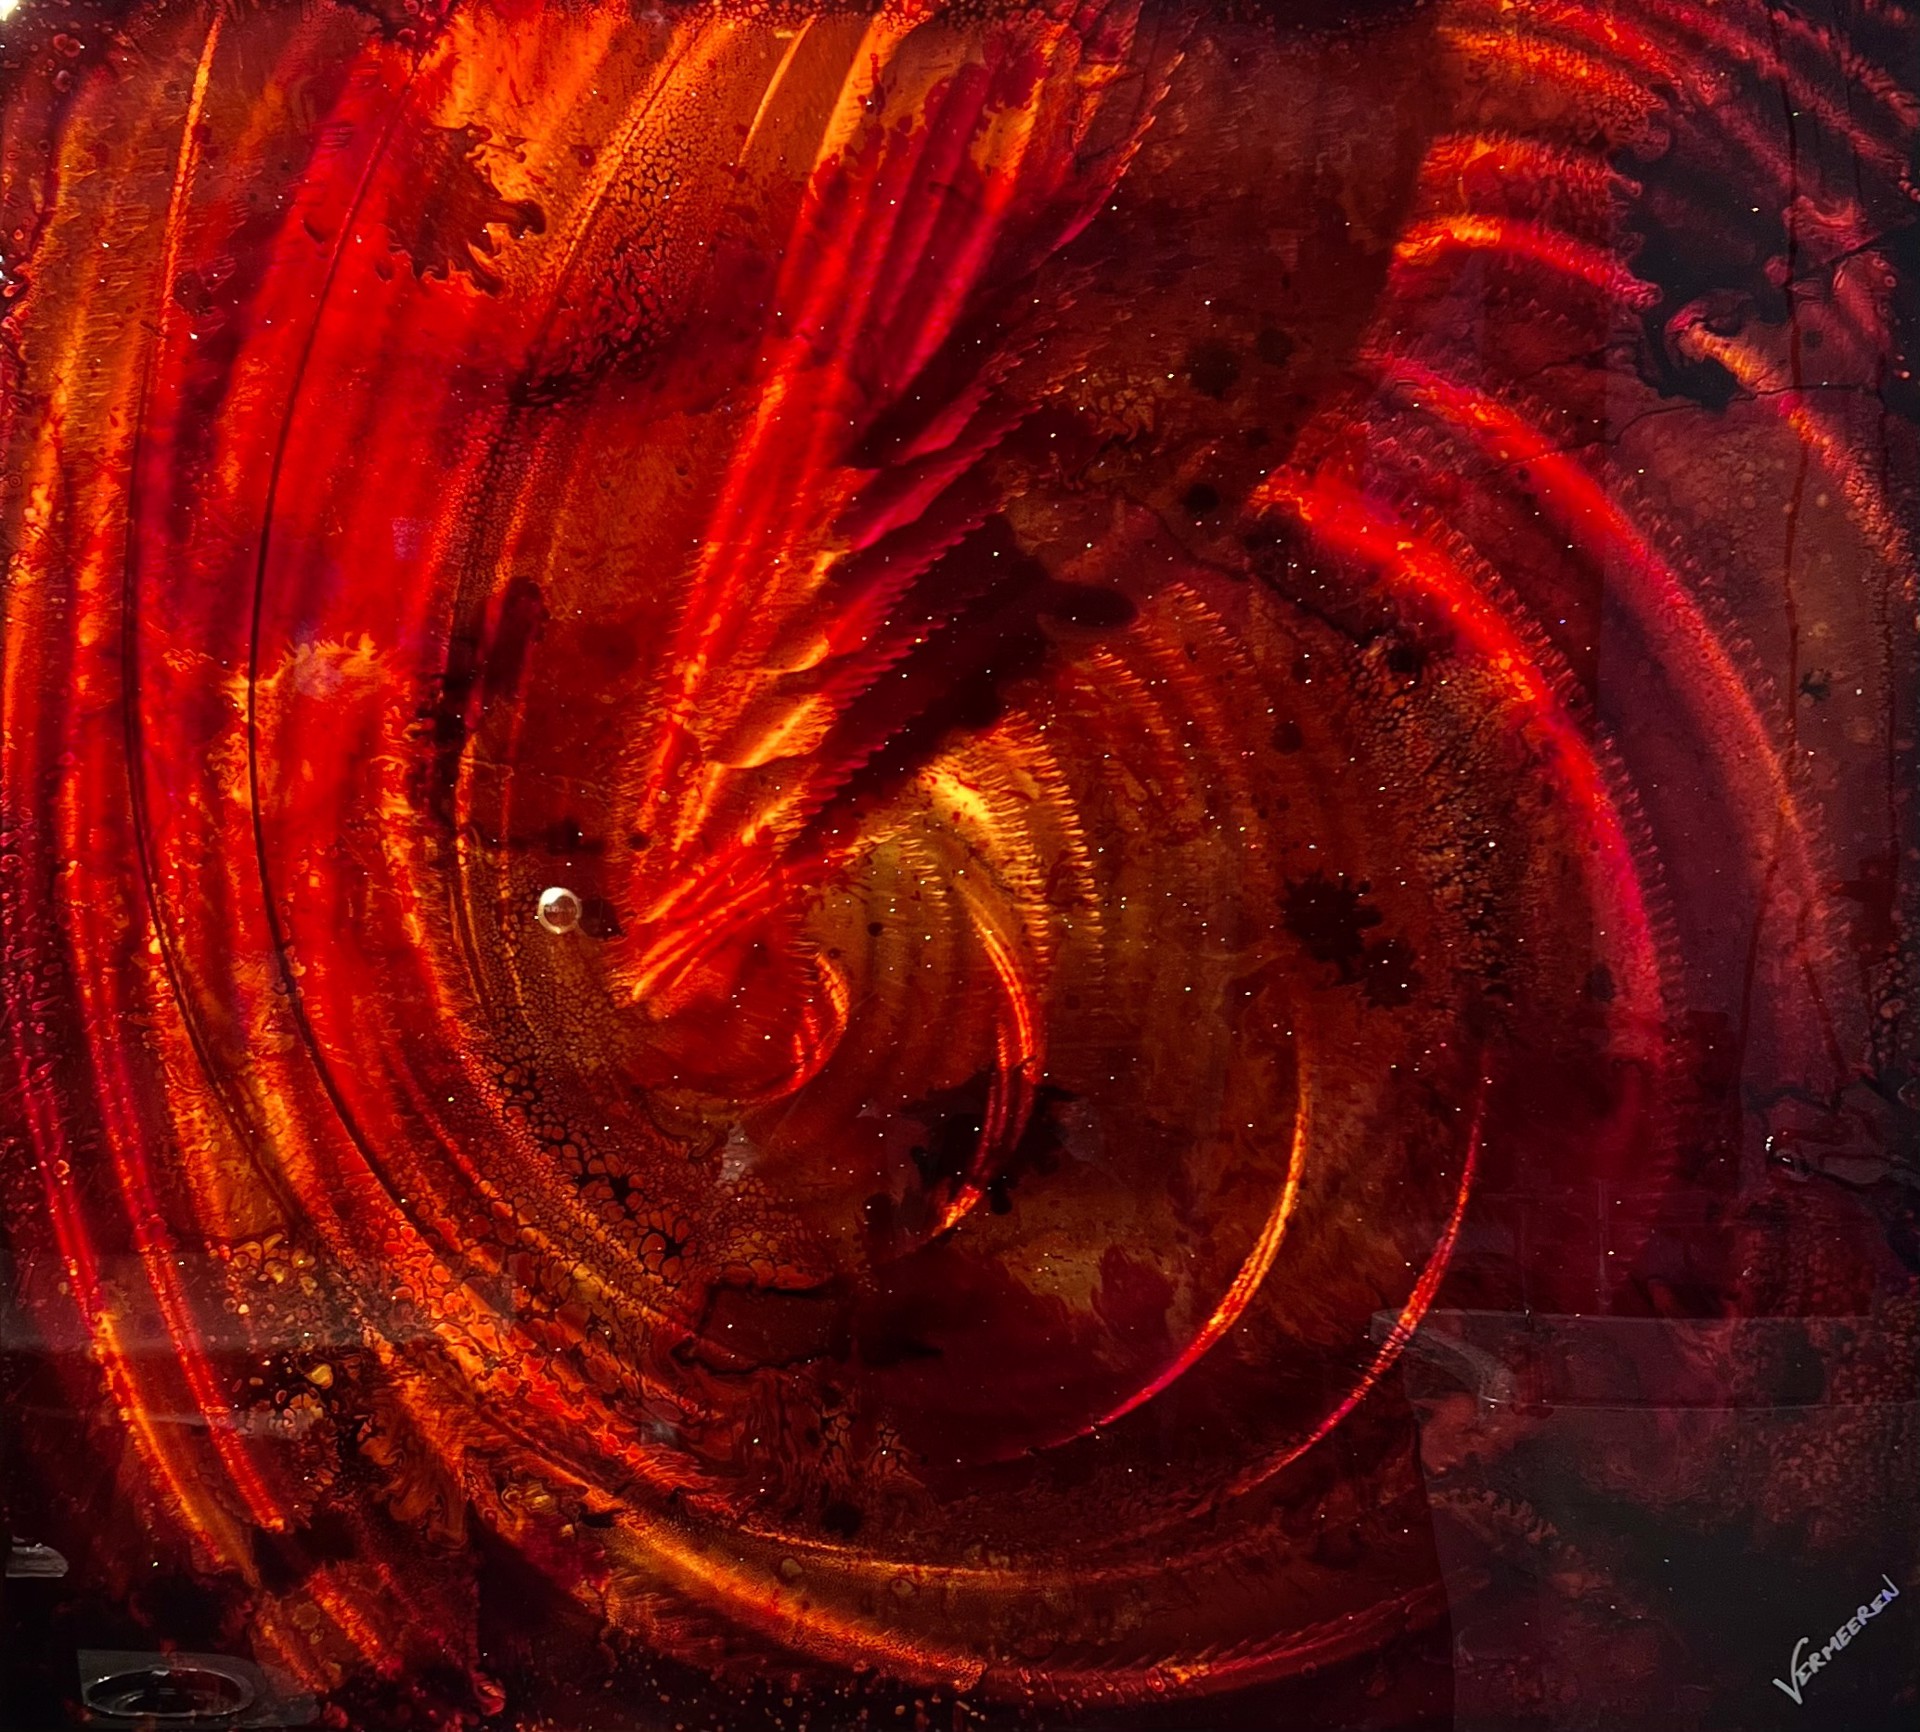 Crimson Spin by Jeff Vermeeren